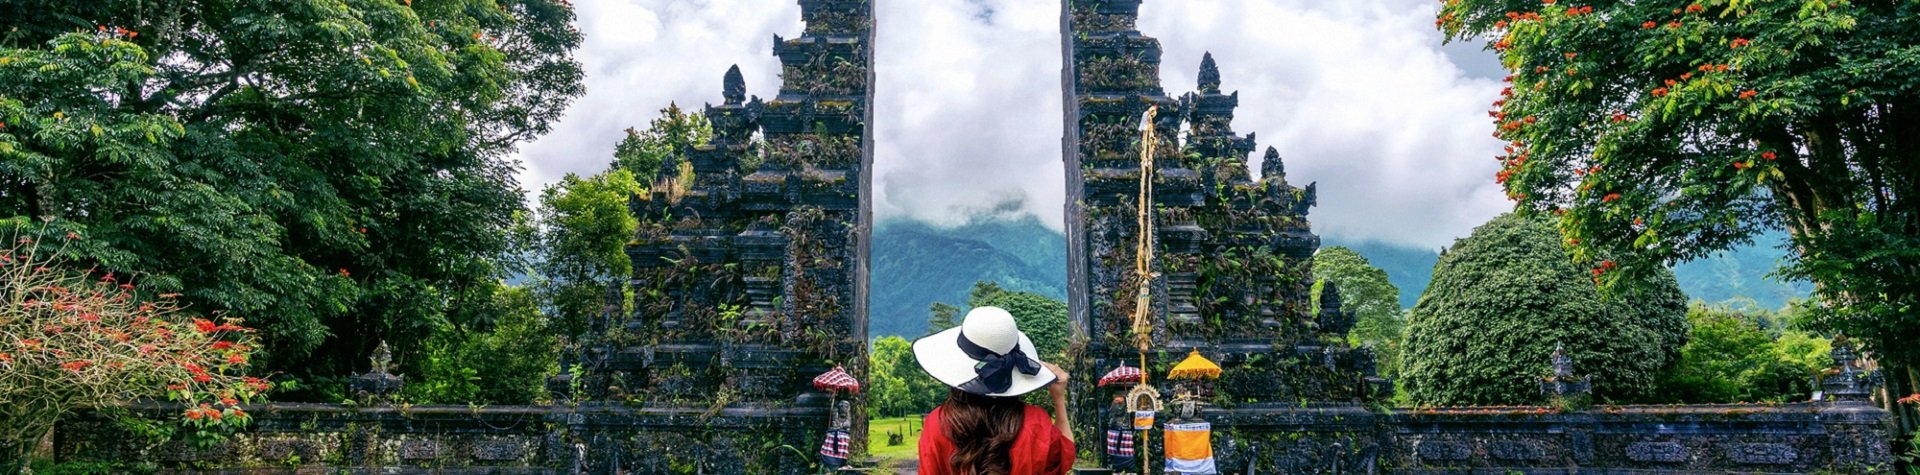 Voyages sur mesure en Indonésie et à Bali